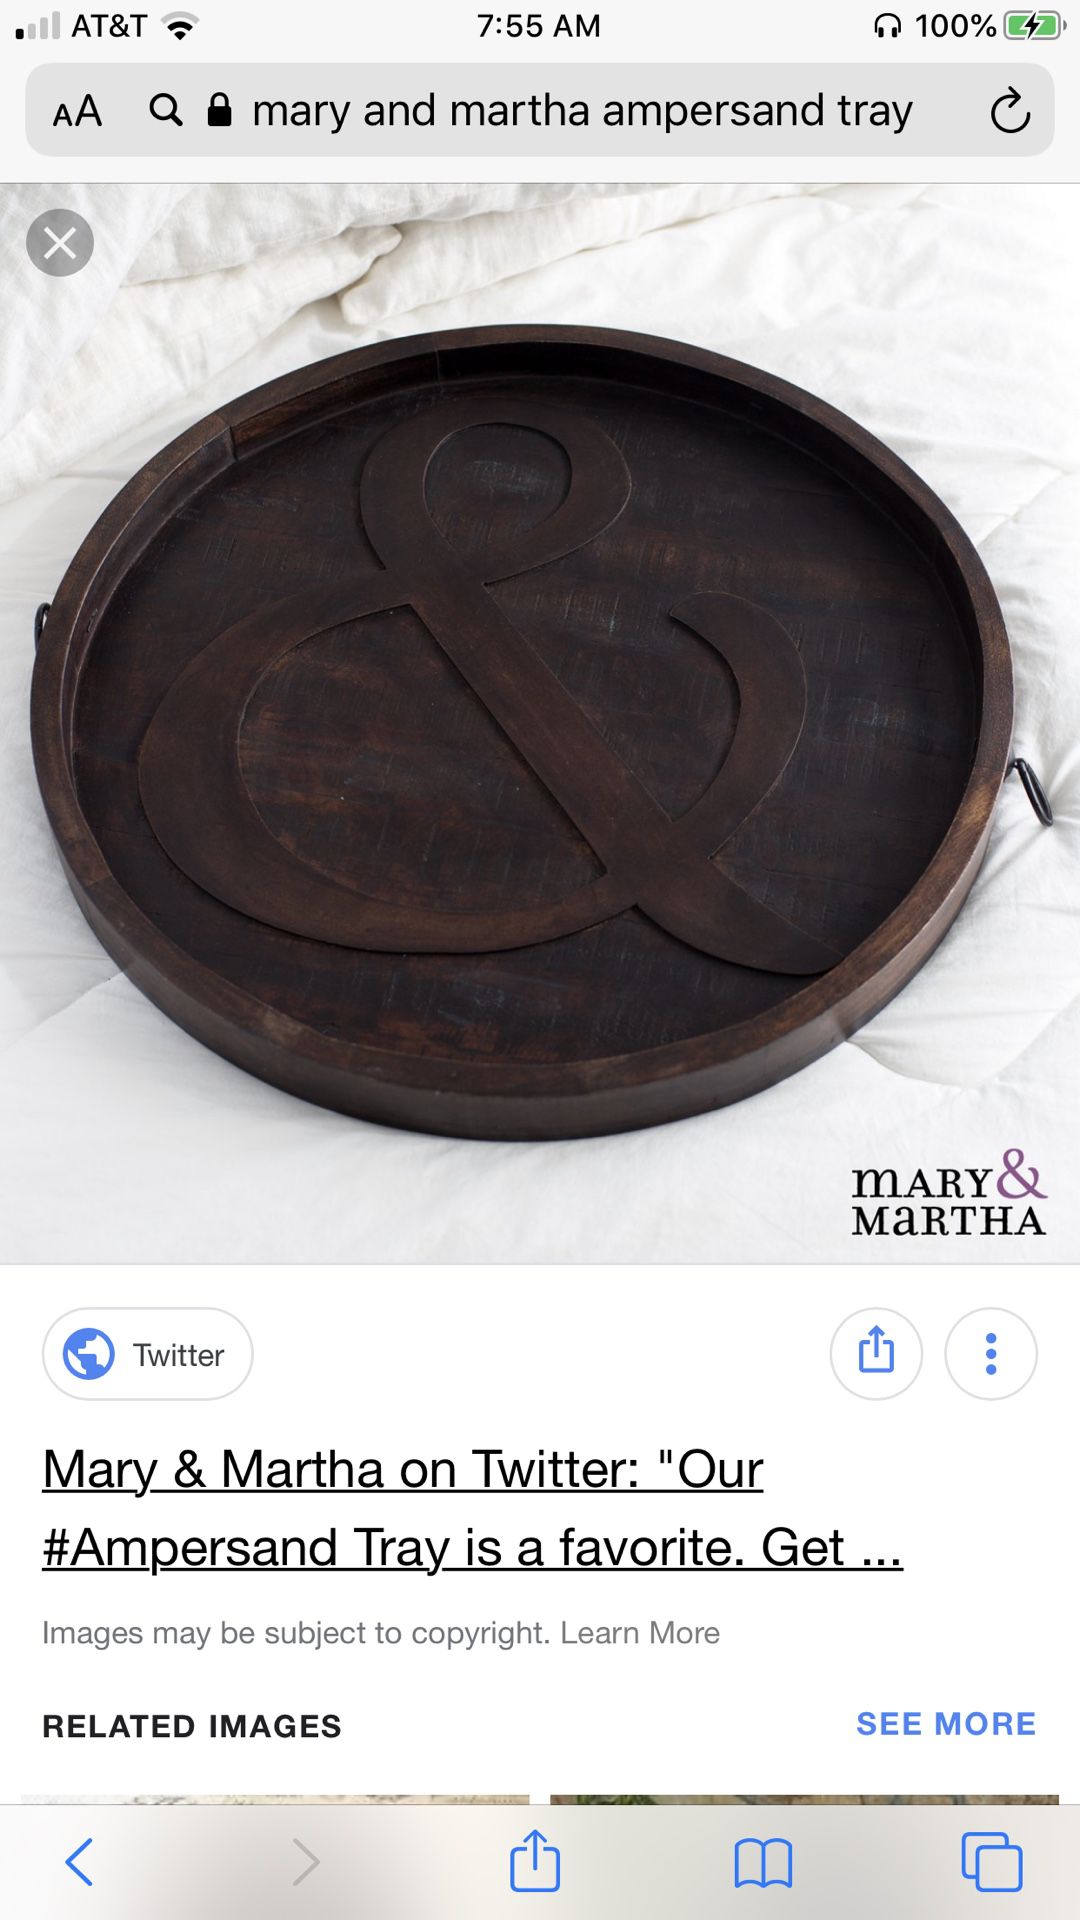 Mary and Martha Ampersand tray